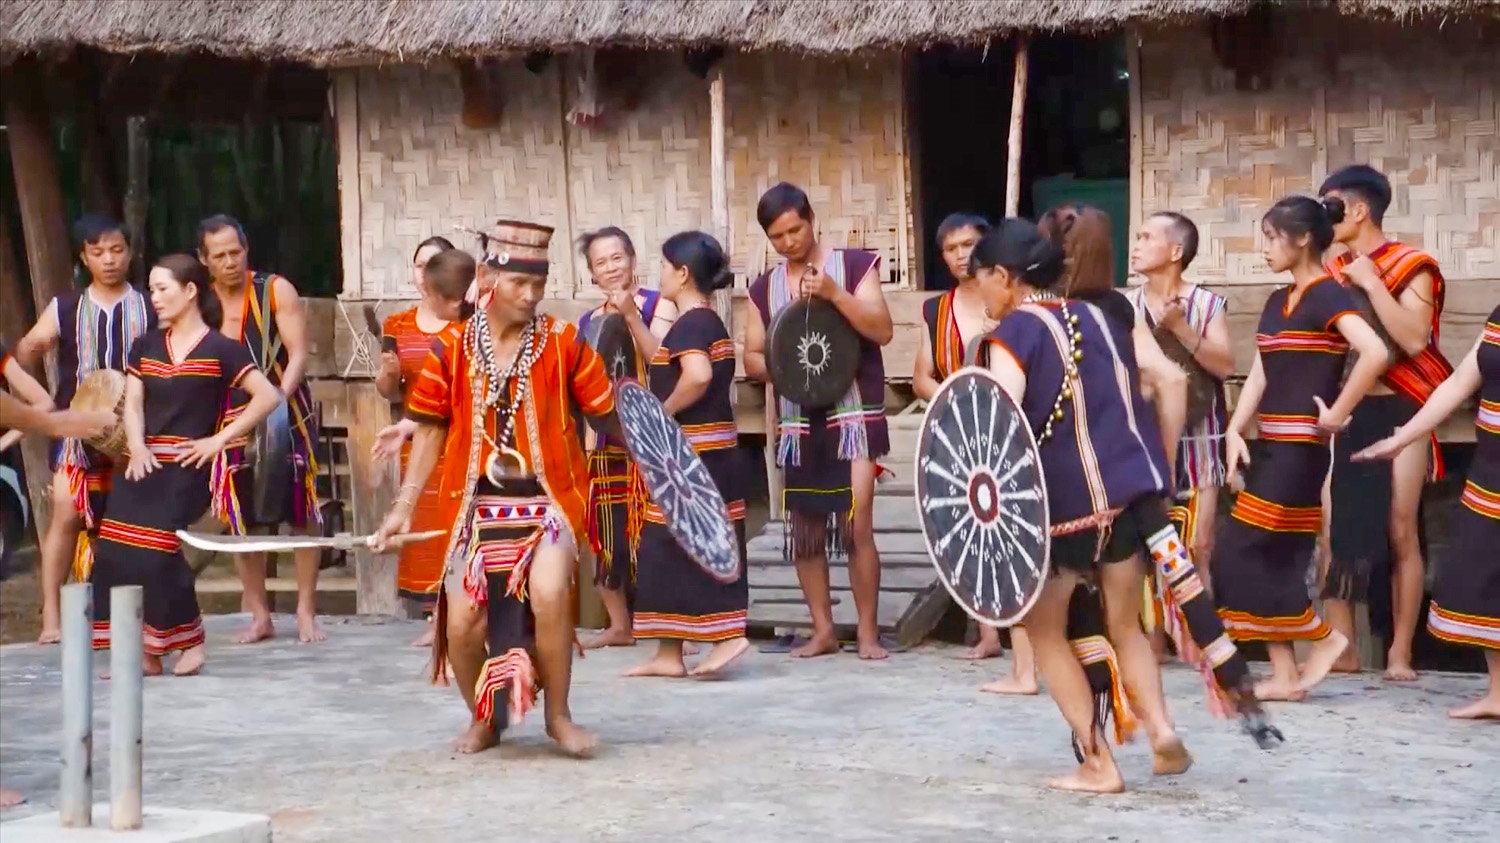 Đồng bào Gié Triêng ở Làng du lịch cộng đồng Đăk Răng, xã Đăk Dục, huyện Ngọc Hồi, tỉnh Kon Tum trình diễn cồng chiêng, múa xoang phục vụ du khách